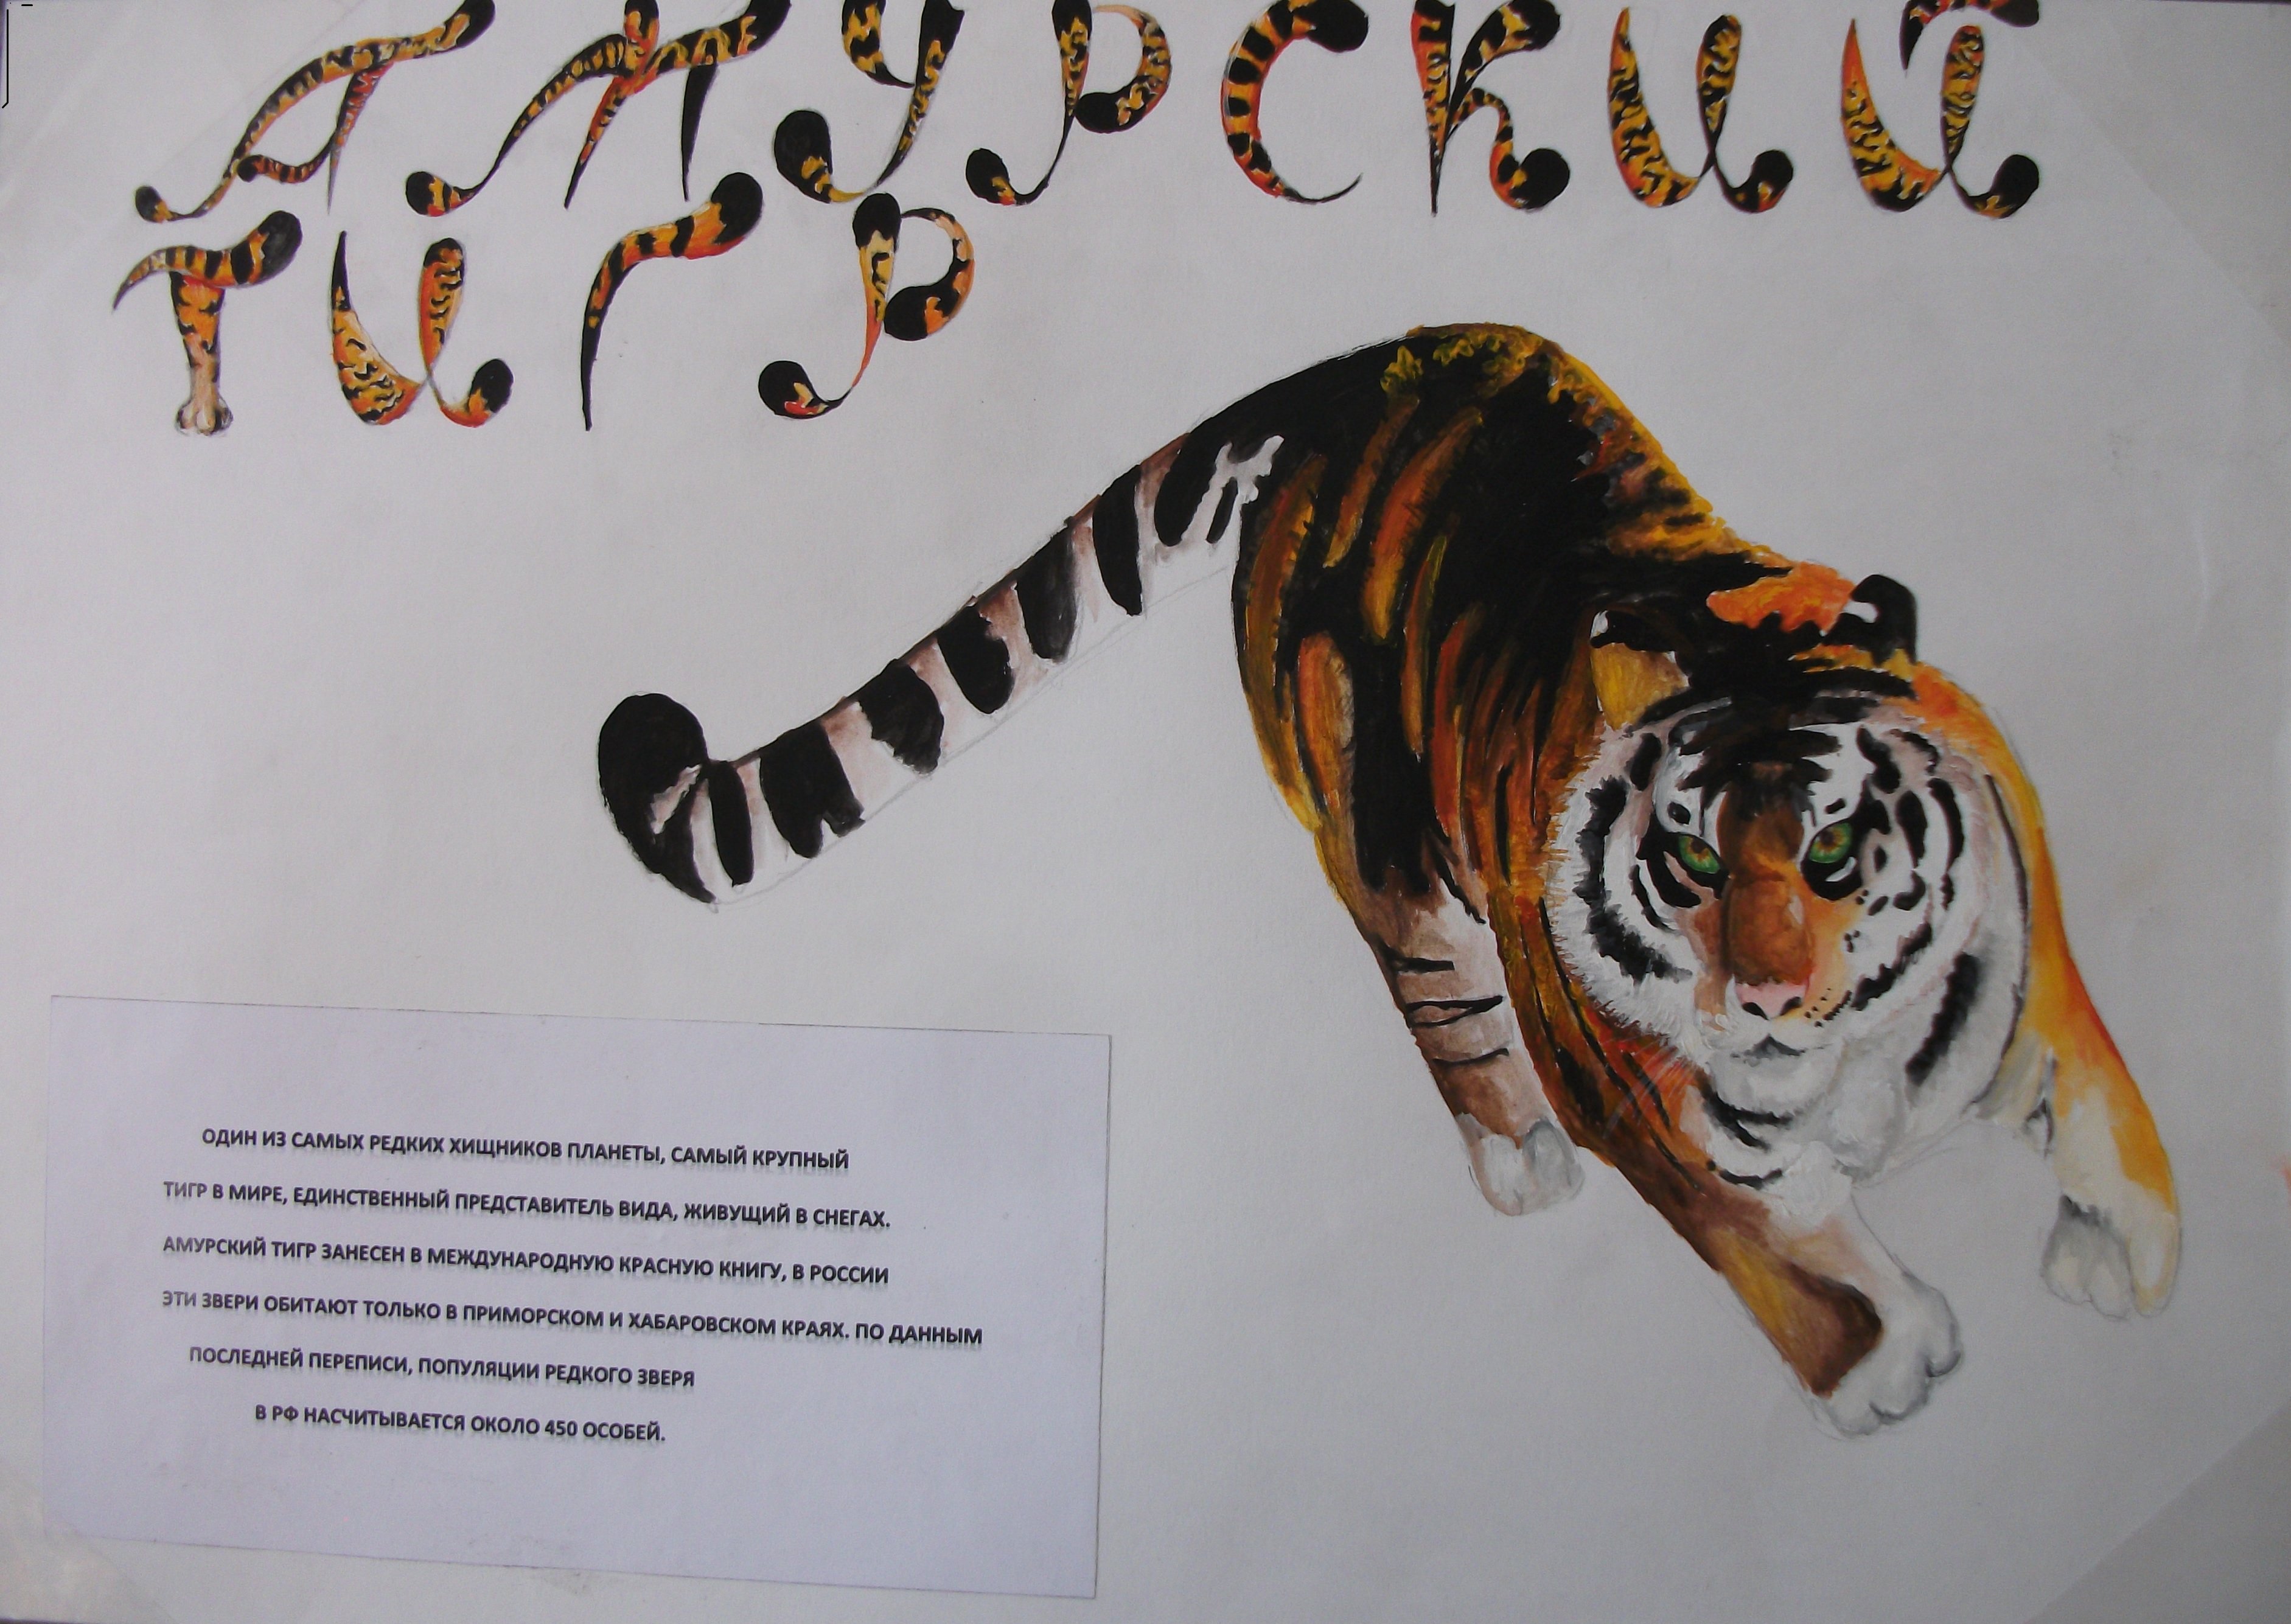 Амурский тигр самый редкий представитель